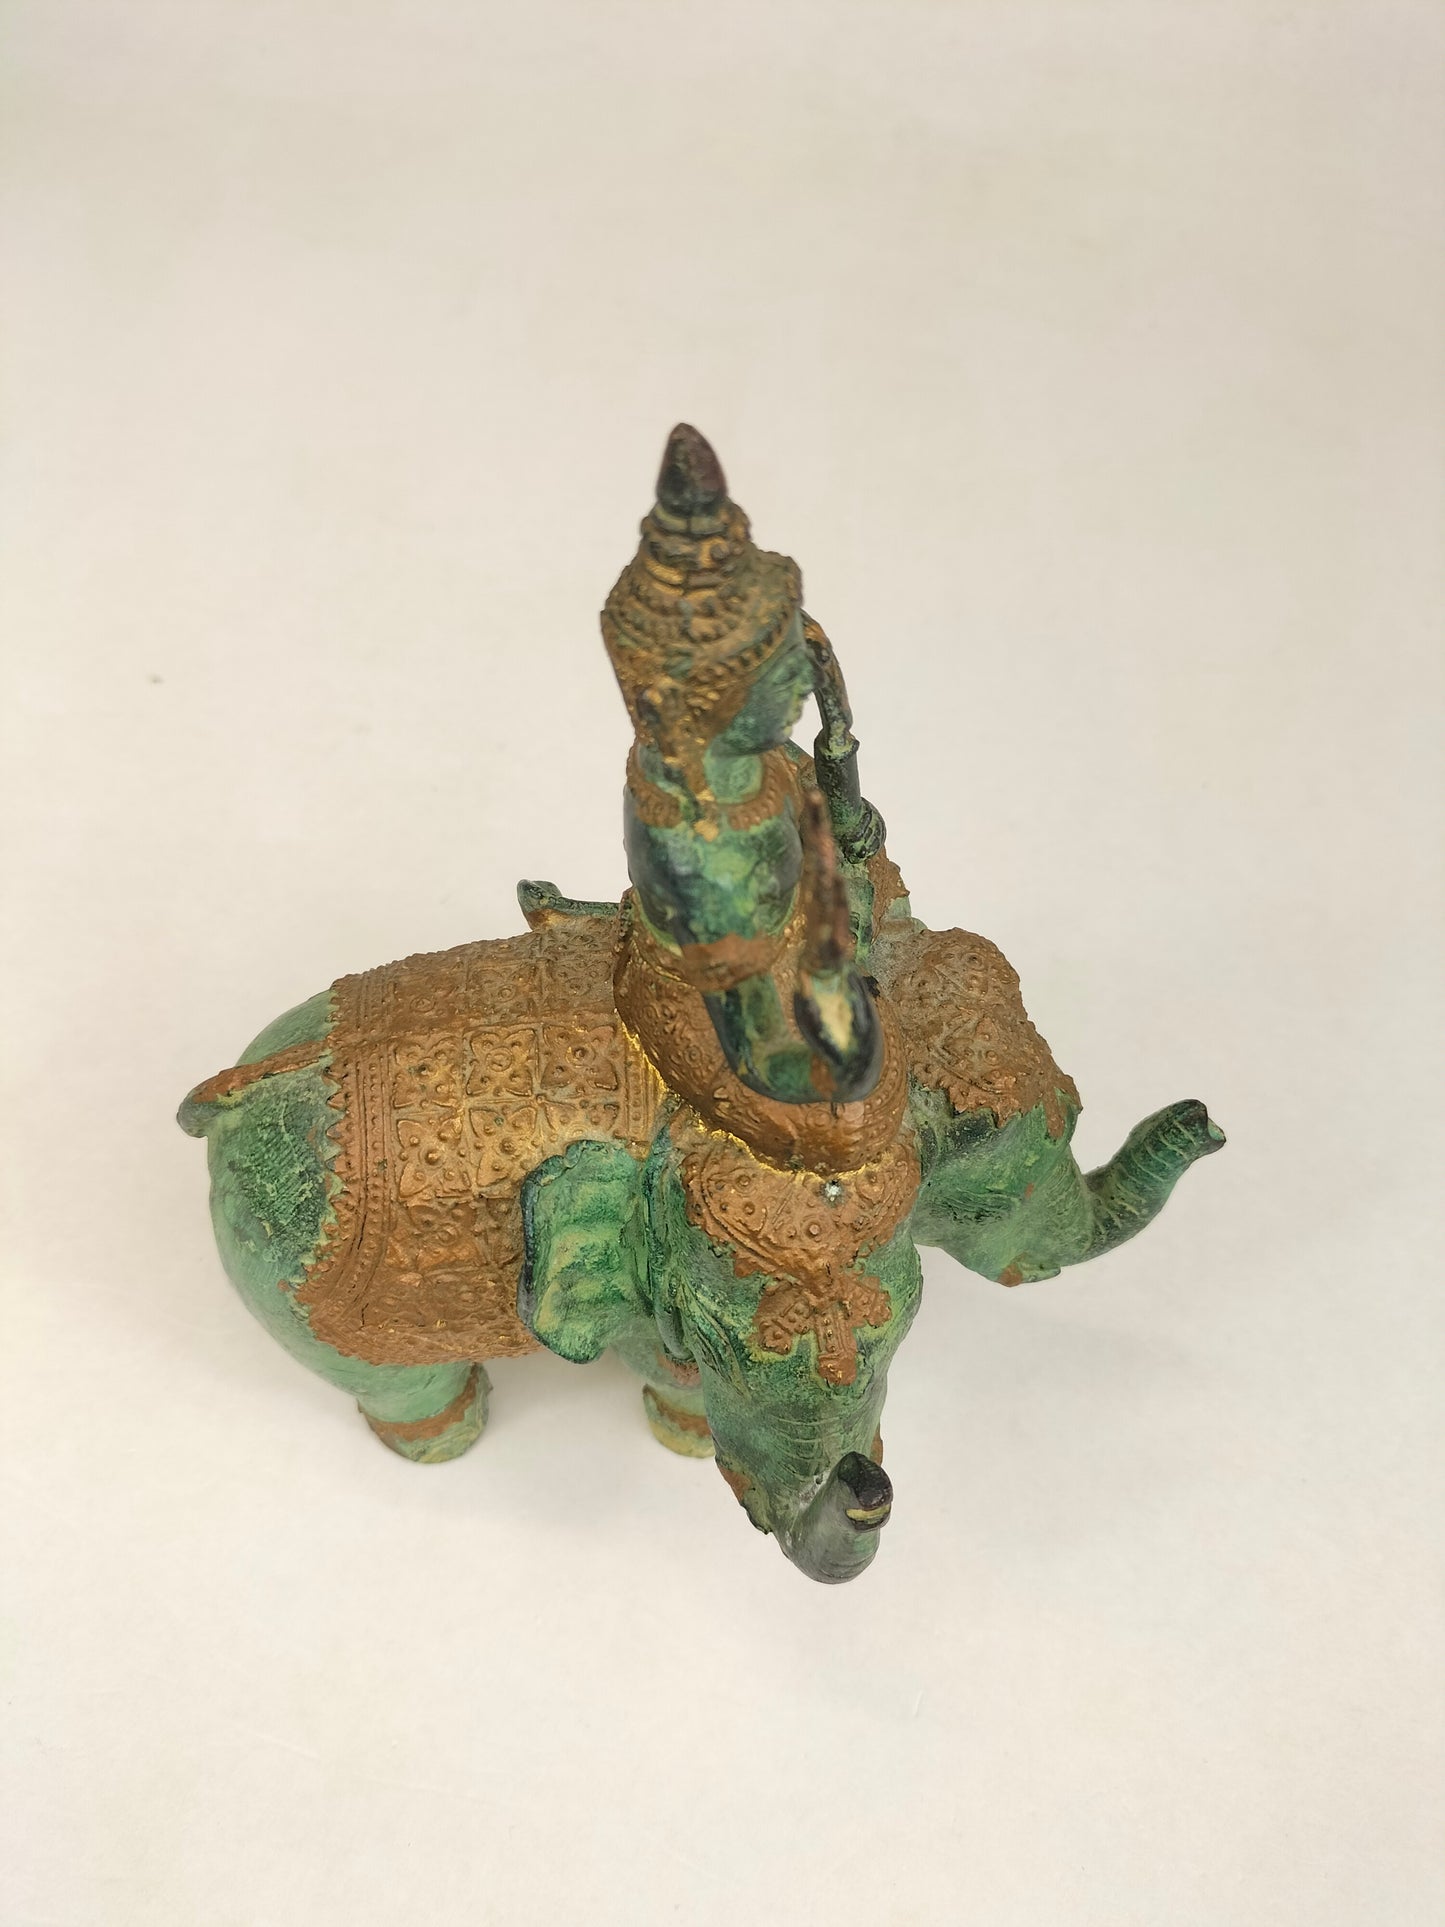 骑着大象的寺庙守护者镀金青铜雕像 // 泰国 - 20 世纪